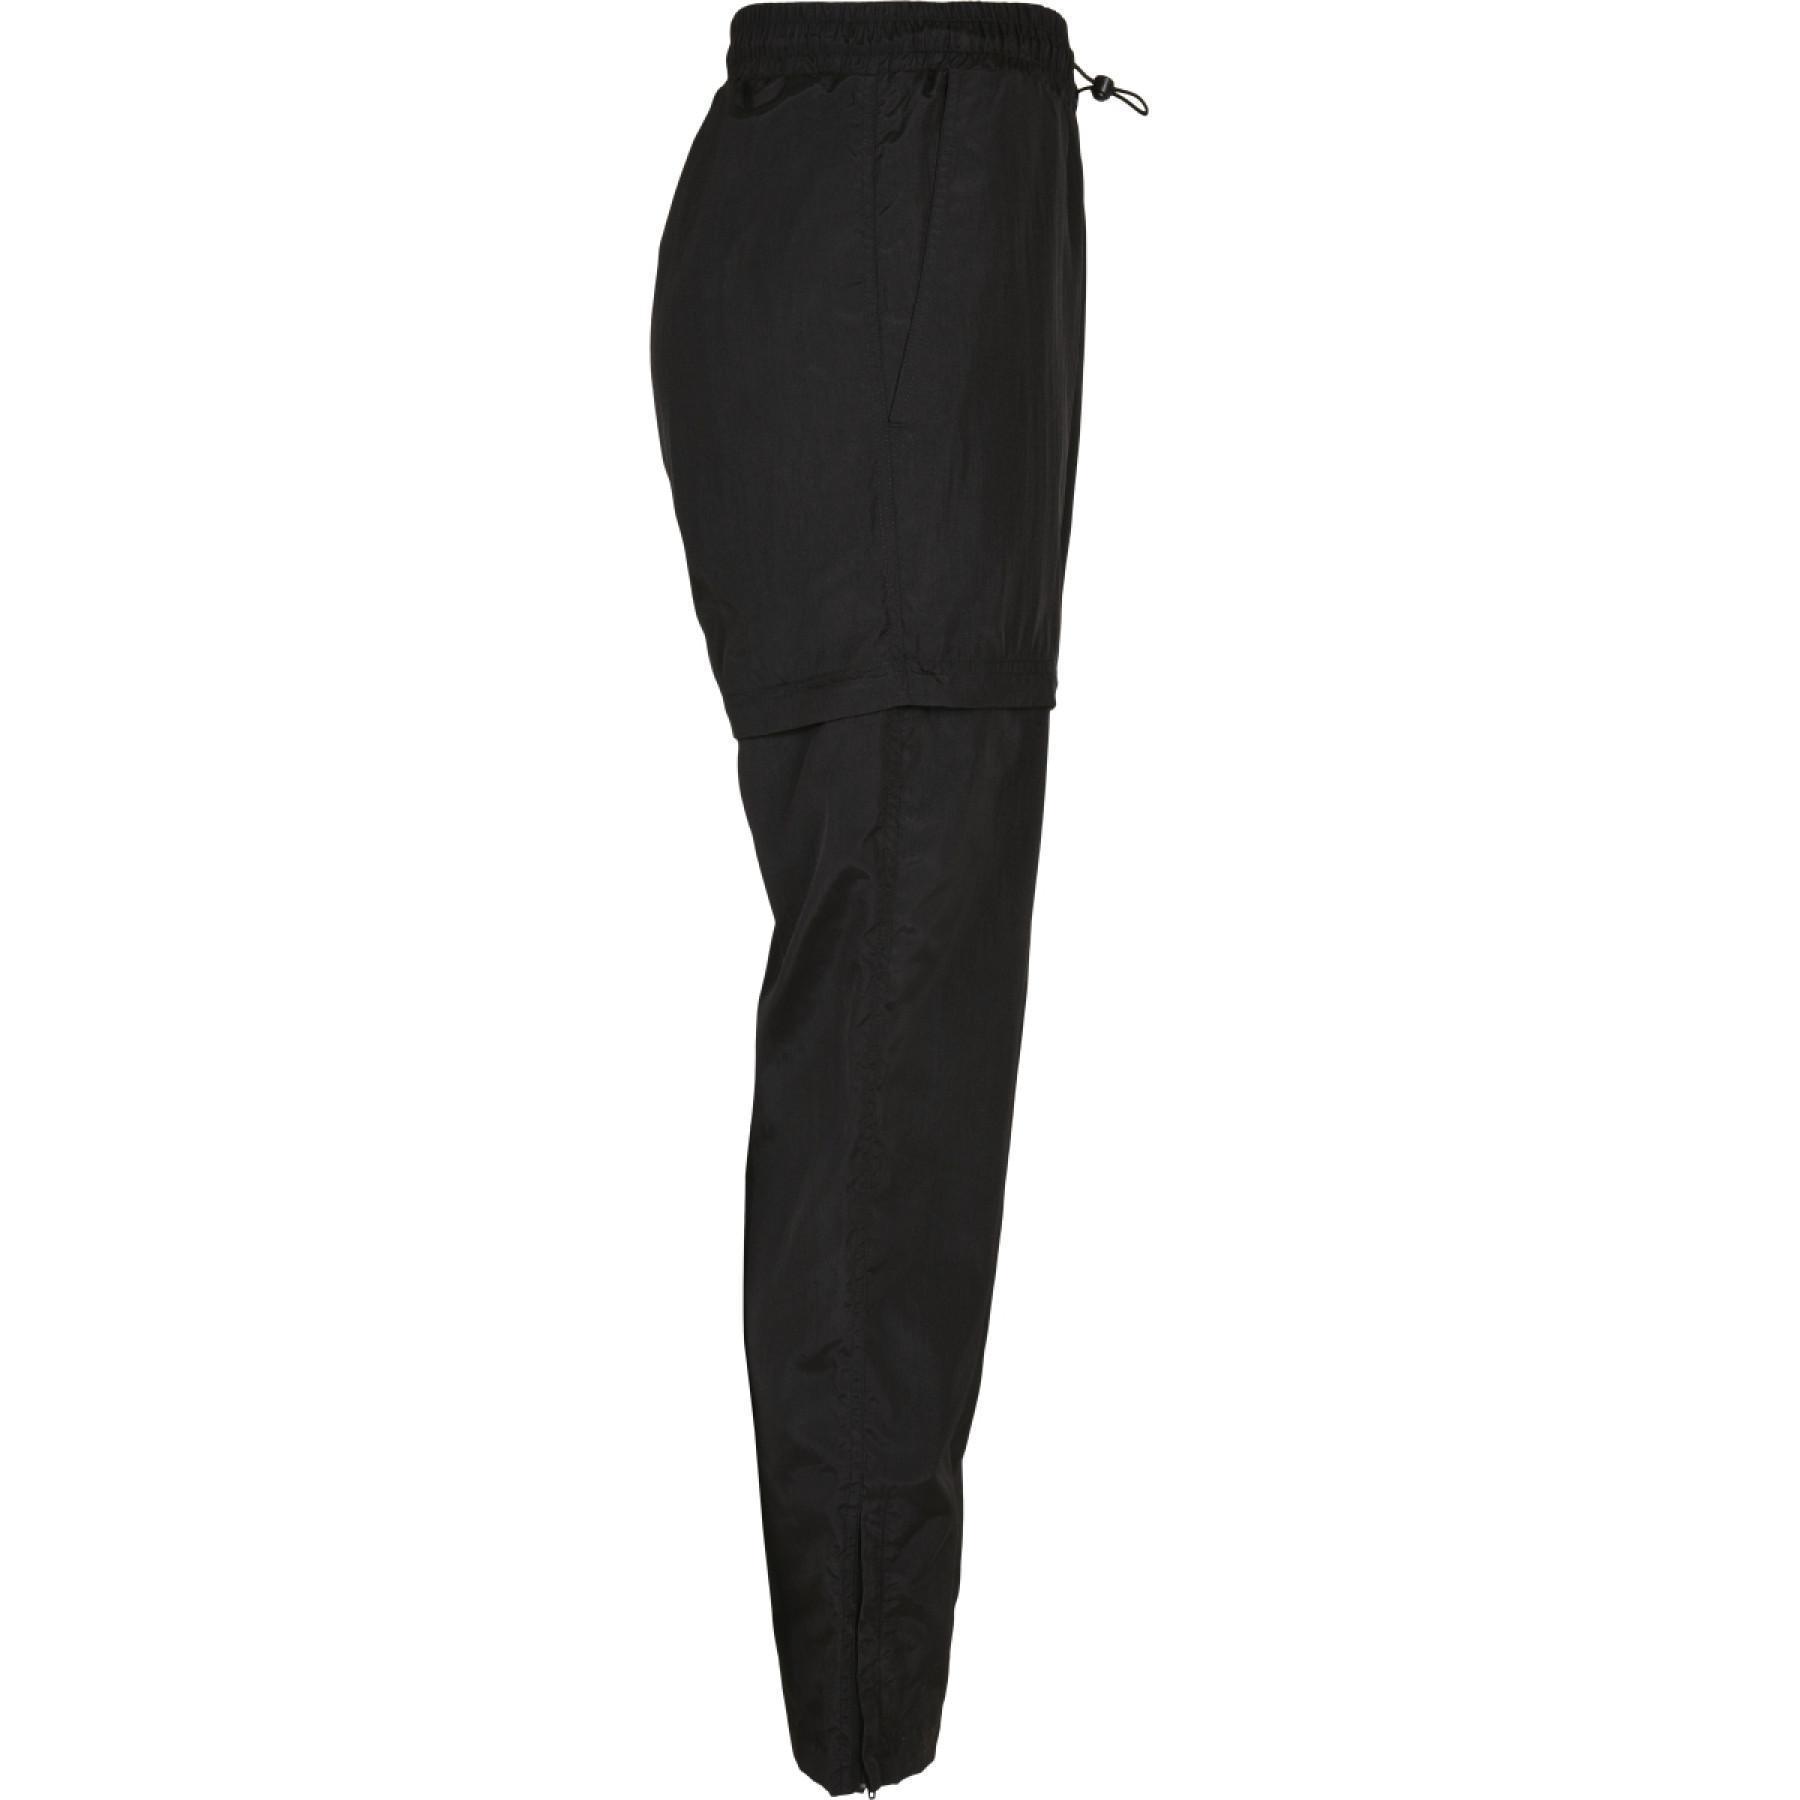 Spodnie damskie Urban Classics shiny crinkle nylon zip